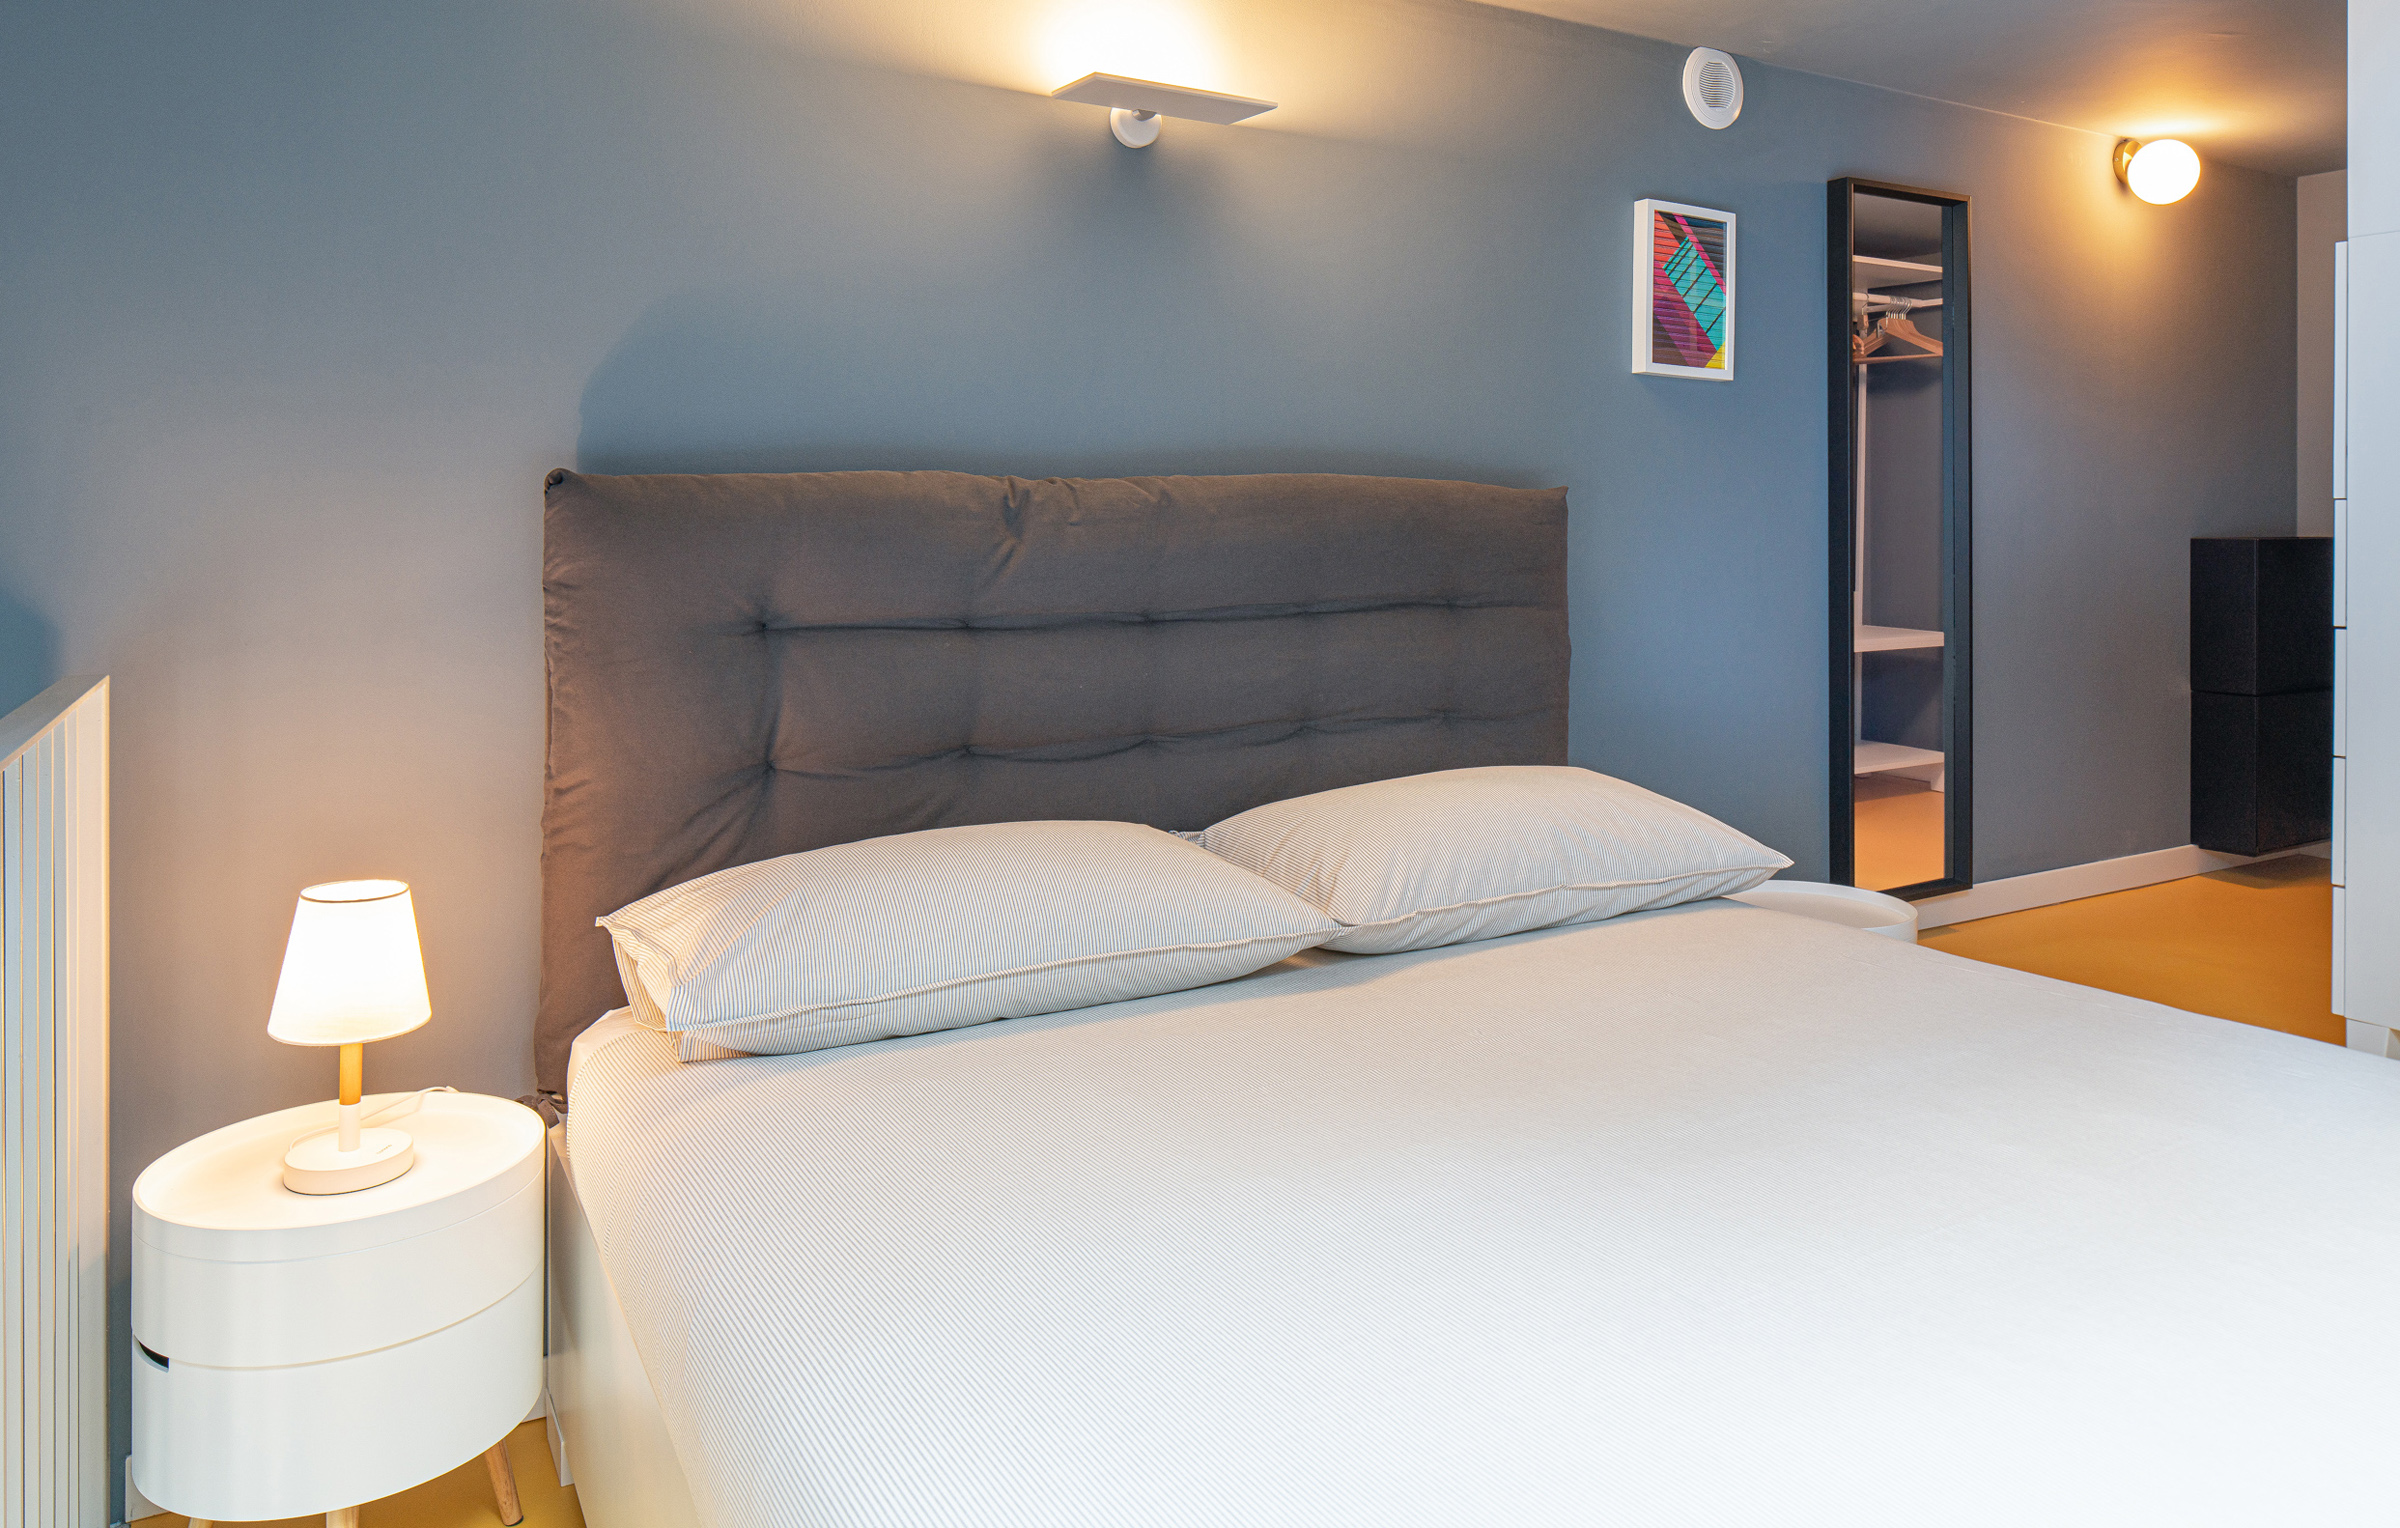 L'affitto dell'appartamento a Residenza Dergano include la biancheria da letto e da bagno